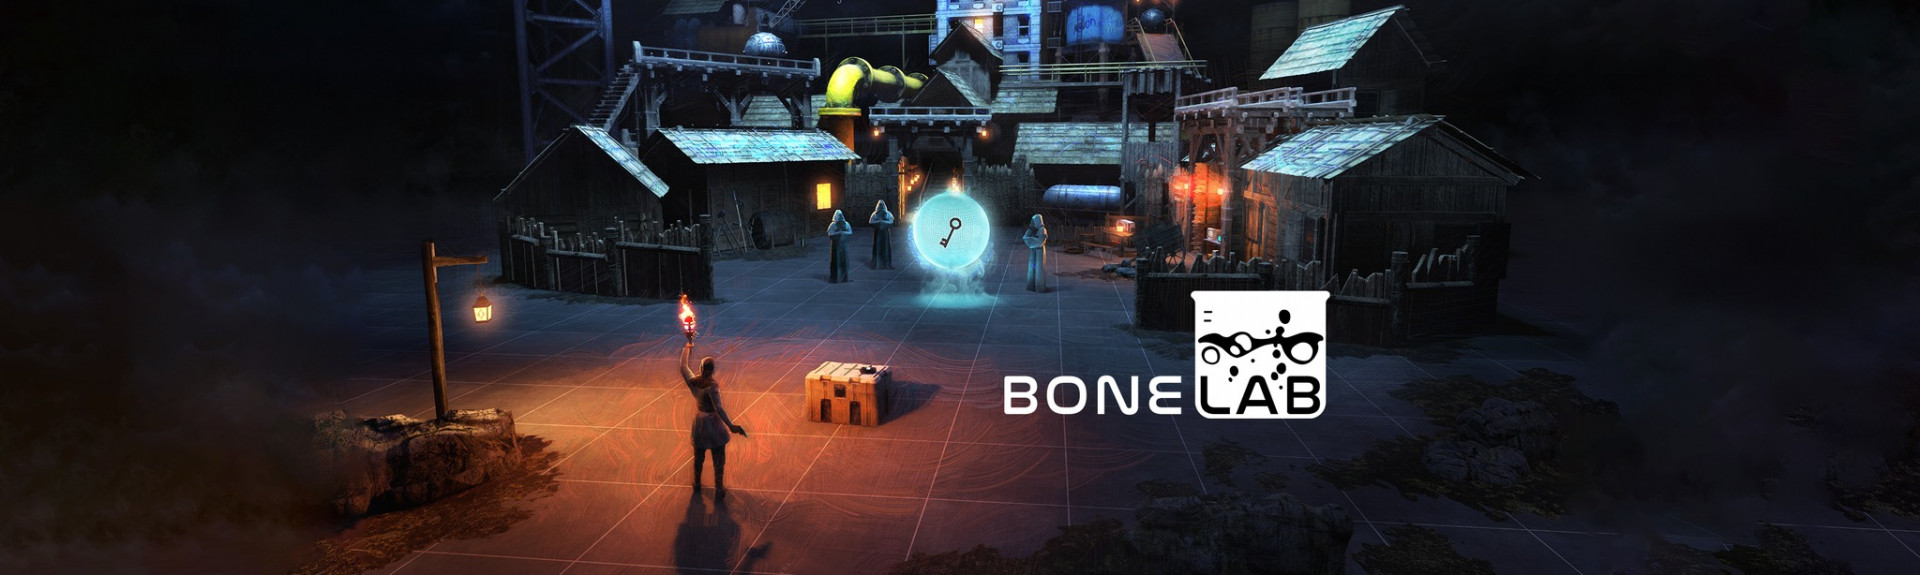 Actualización: Bonelab llegará el próximo jueves 29 de septiembre